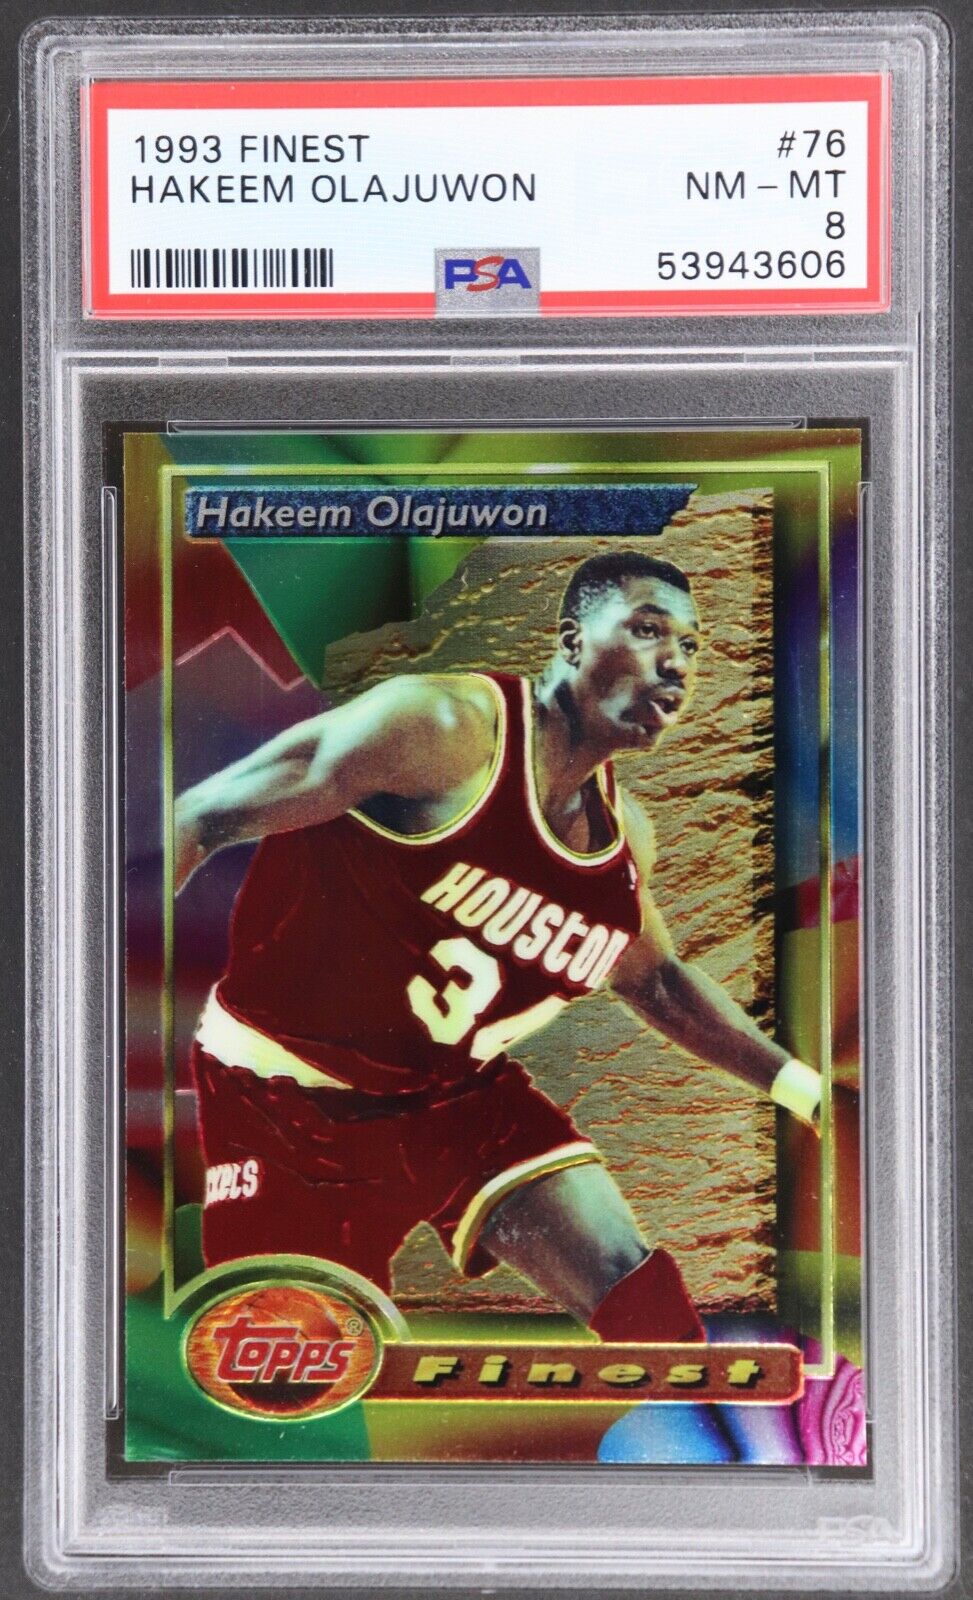 1993 Topps Finest  Hakeem Olajuwon  # 76  PSA 8 - Houston Rockets